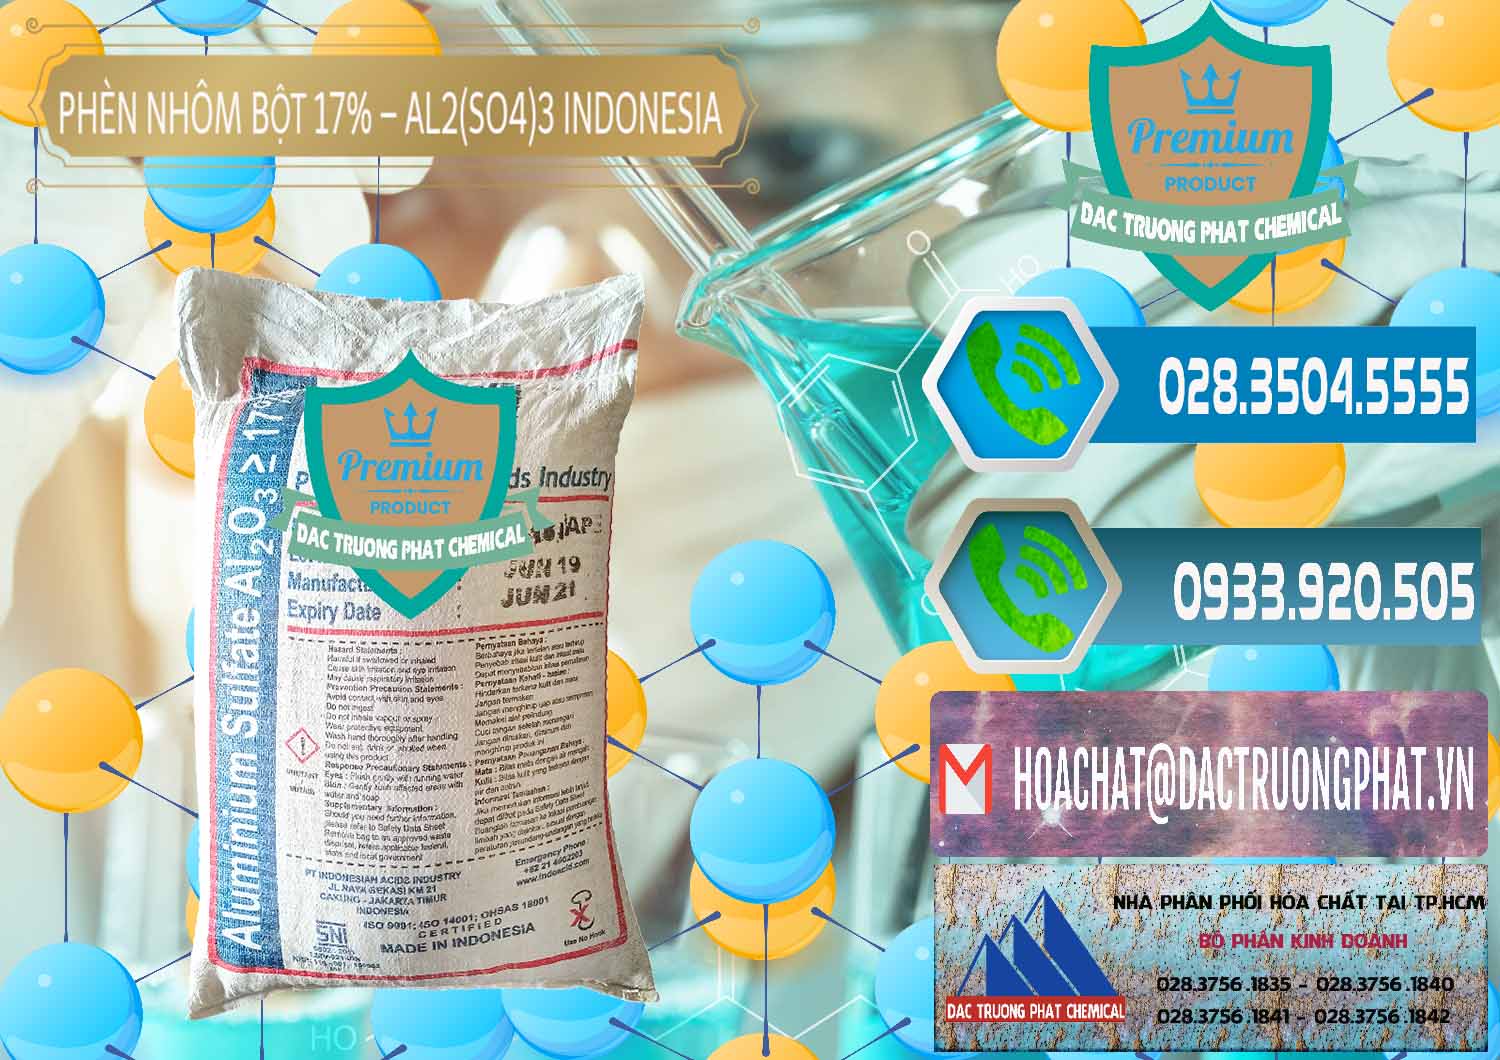 Cty bán & phân phối Phèn Nhôm Bột - Al2(SO4)3 17% bao 25kg Indonesia - 0114 - Chuyên cung cấp ( phân phối ) hóa chất tại TP.HCM - congtyhoachat.net